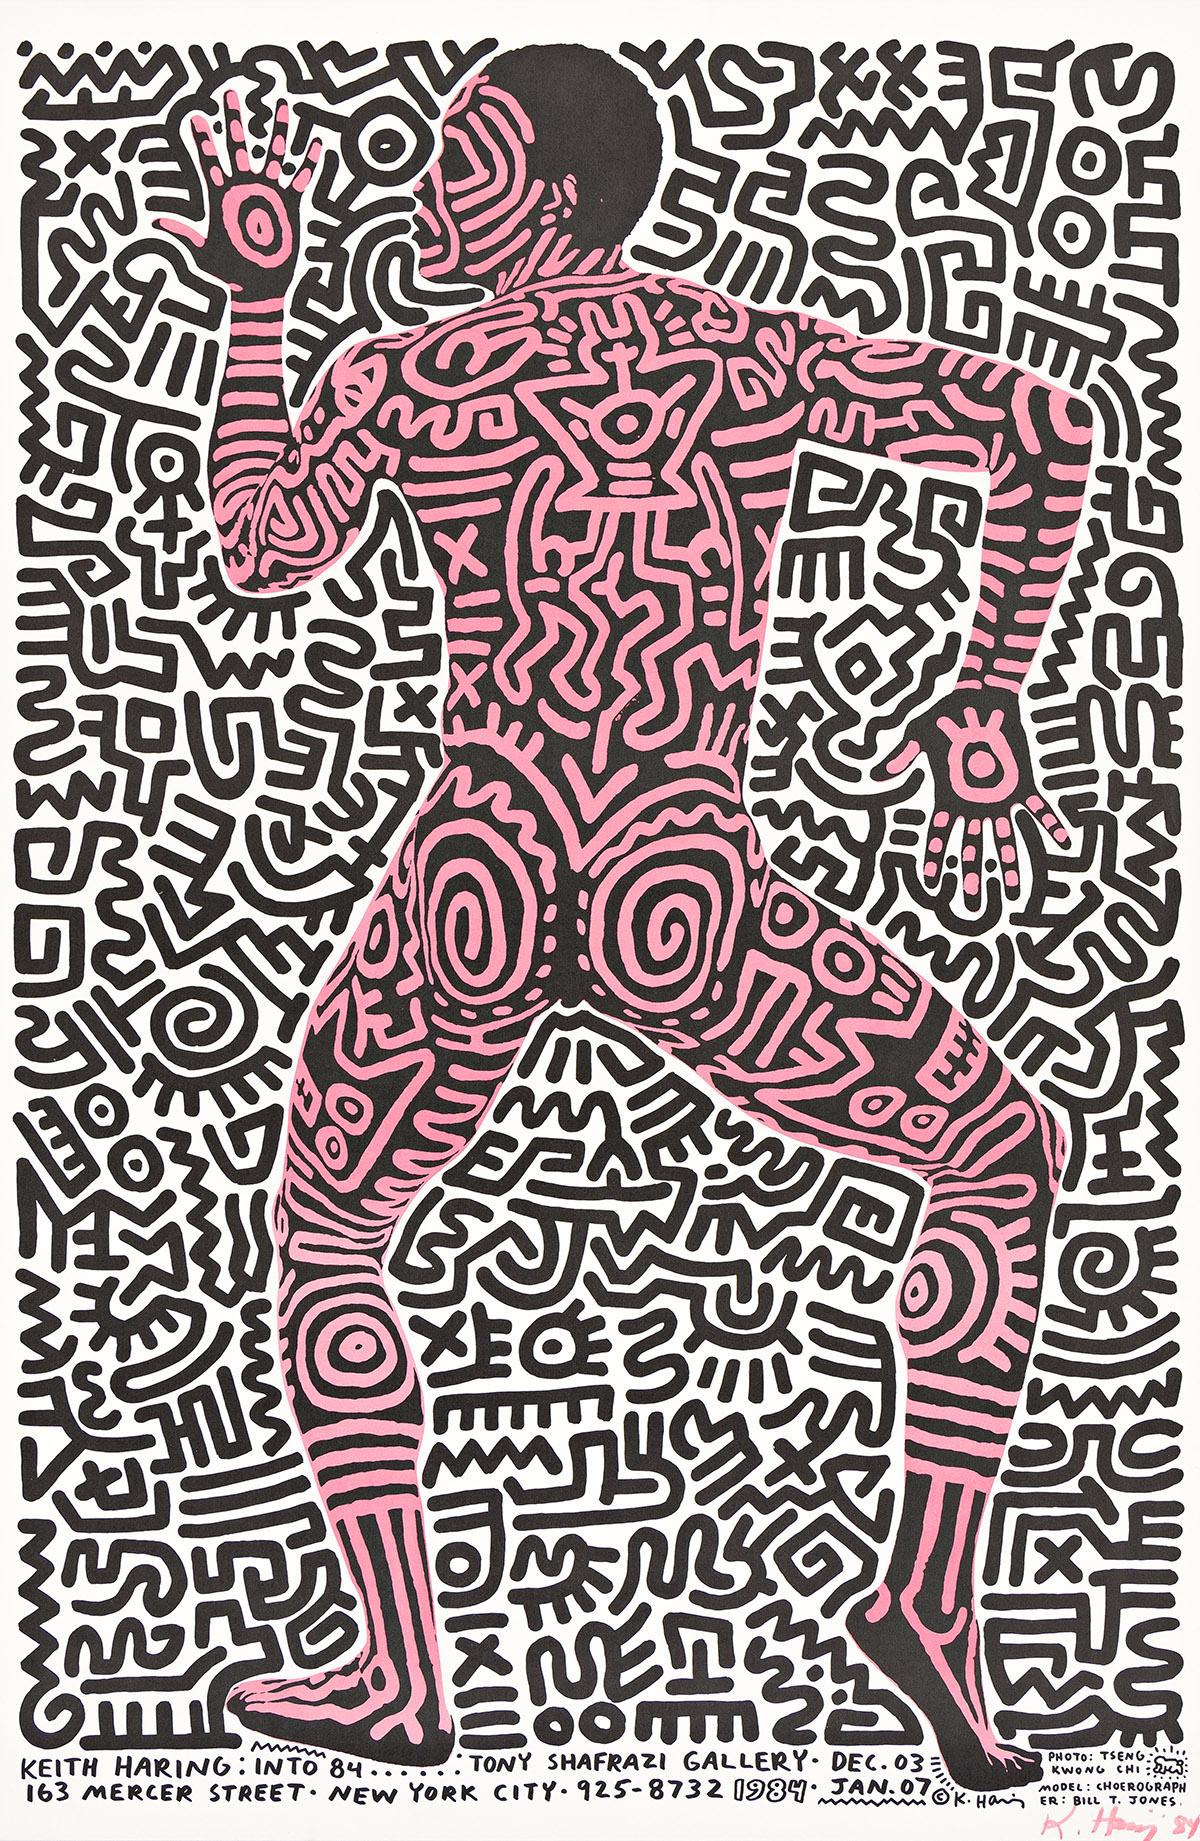 Lithographie offset en couleurs. Signé et daté au feutre et à l'encre rose, en bas à droite. Publié par Tony Shafrazi Gallery, New York. 